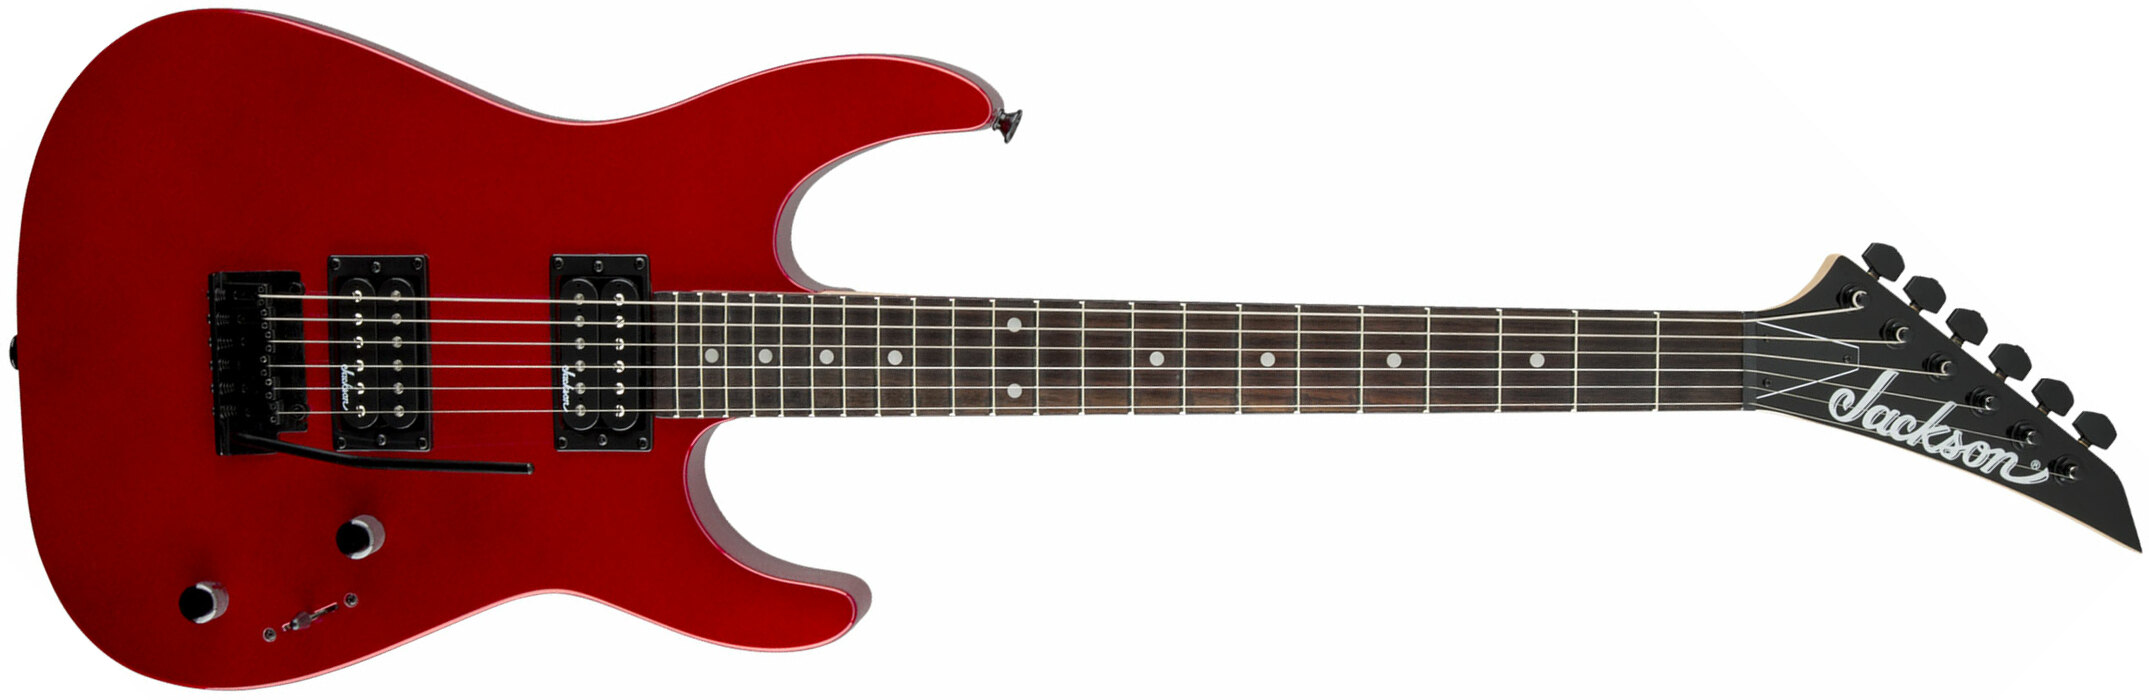 Jackson Dinky Js11 2h Trem Ama - Metallic Red - Elektrische gitaar in Str-vorm - Main picture